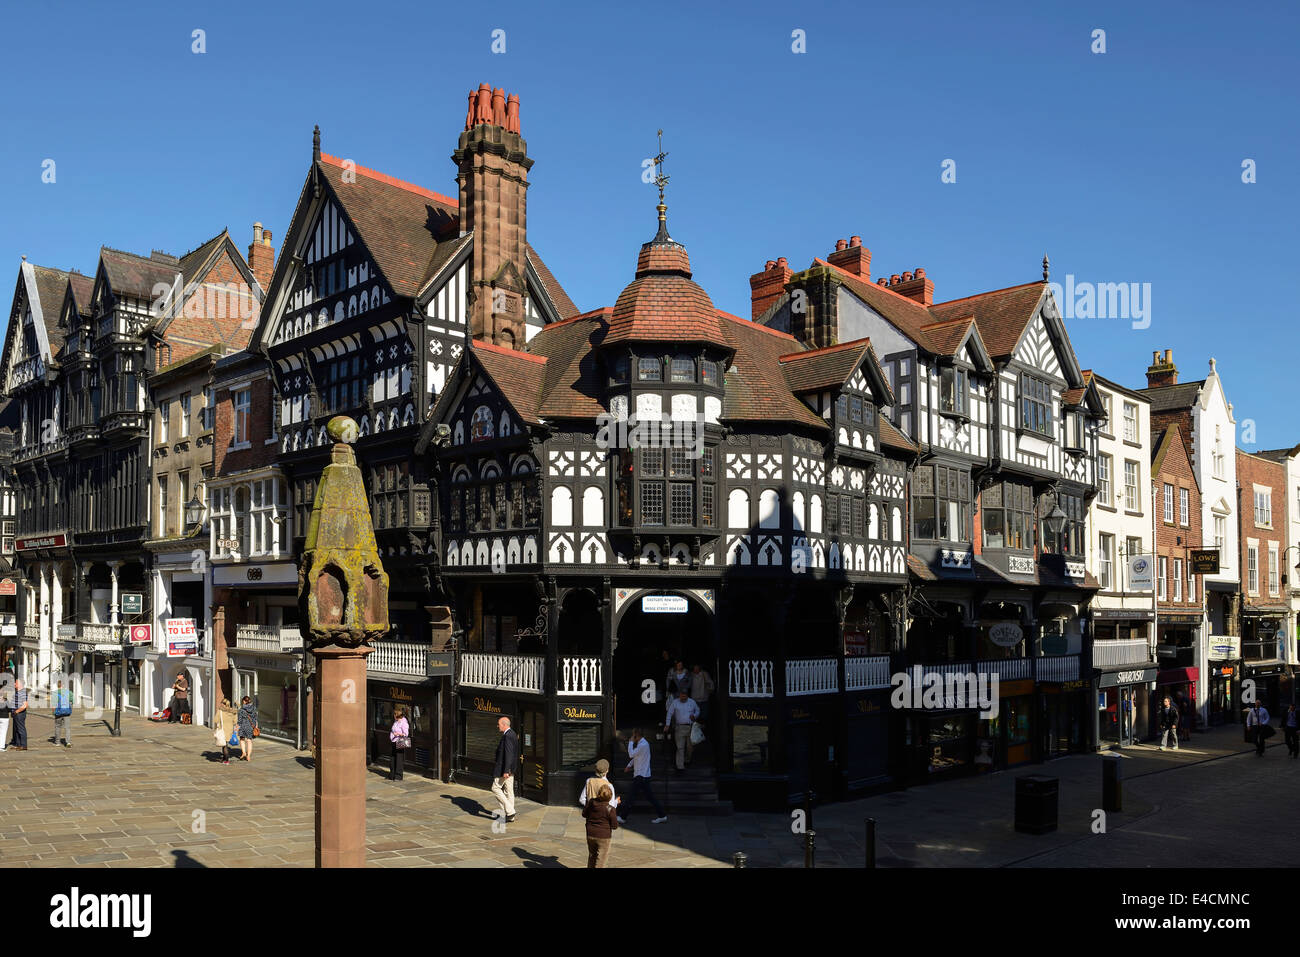 En blanco y negro enmarcadas de madera tiendas y edificios en la cruz en el centro de la ciudad de Chester UK Foto de stock